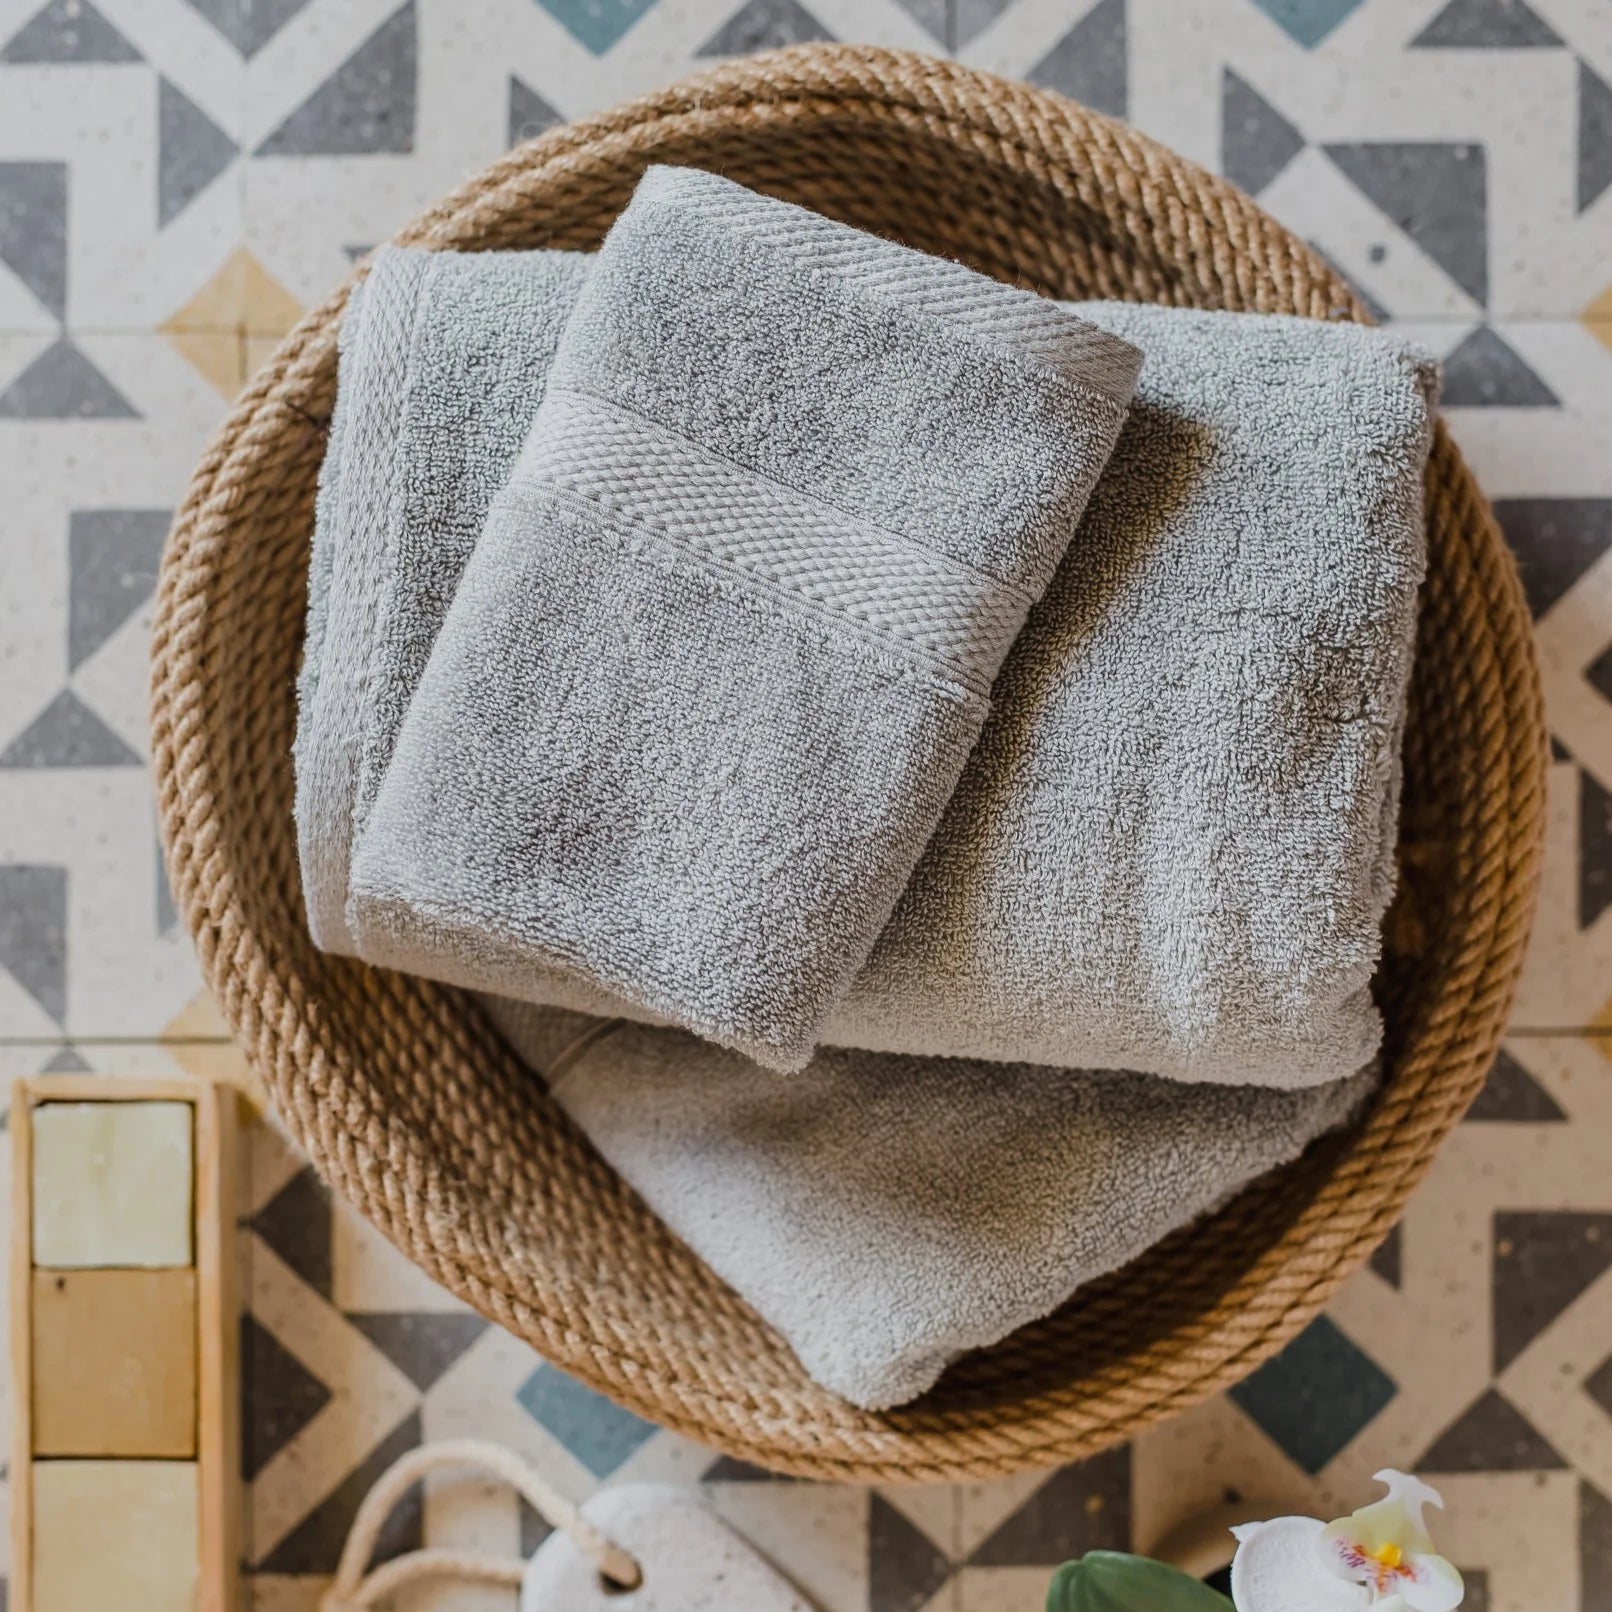 Sienna Bath Towel